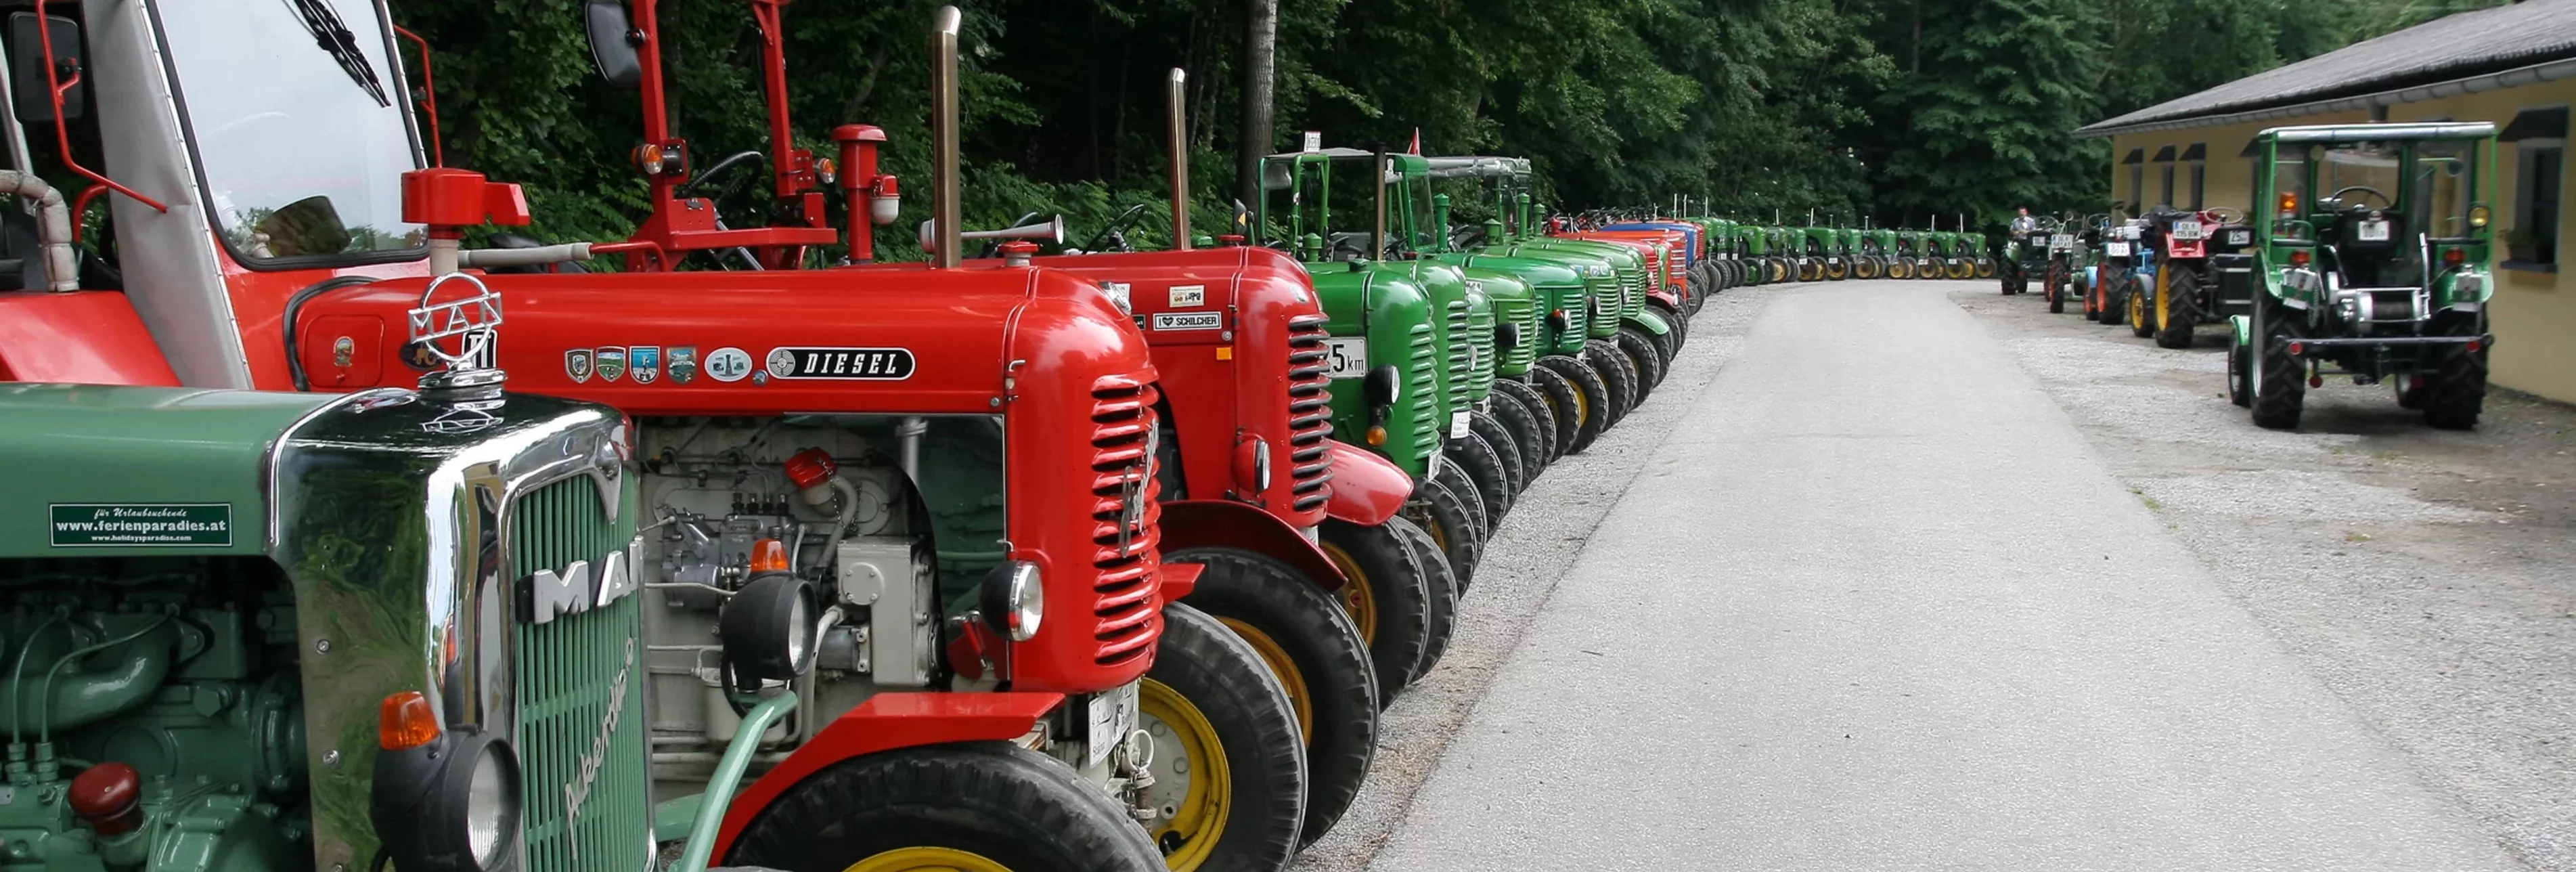 Traktormuseum Stainzerhof | © Traktormuseum